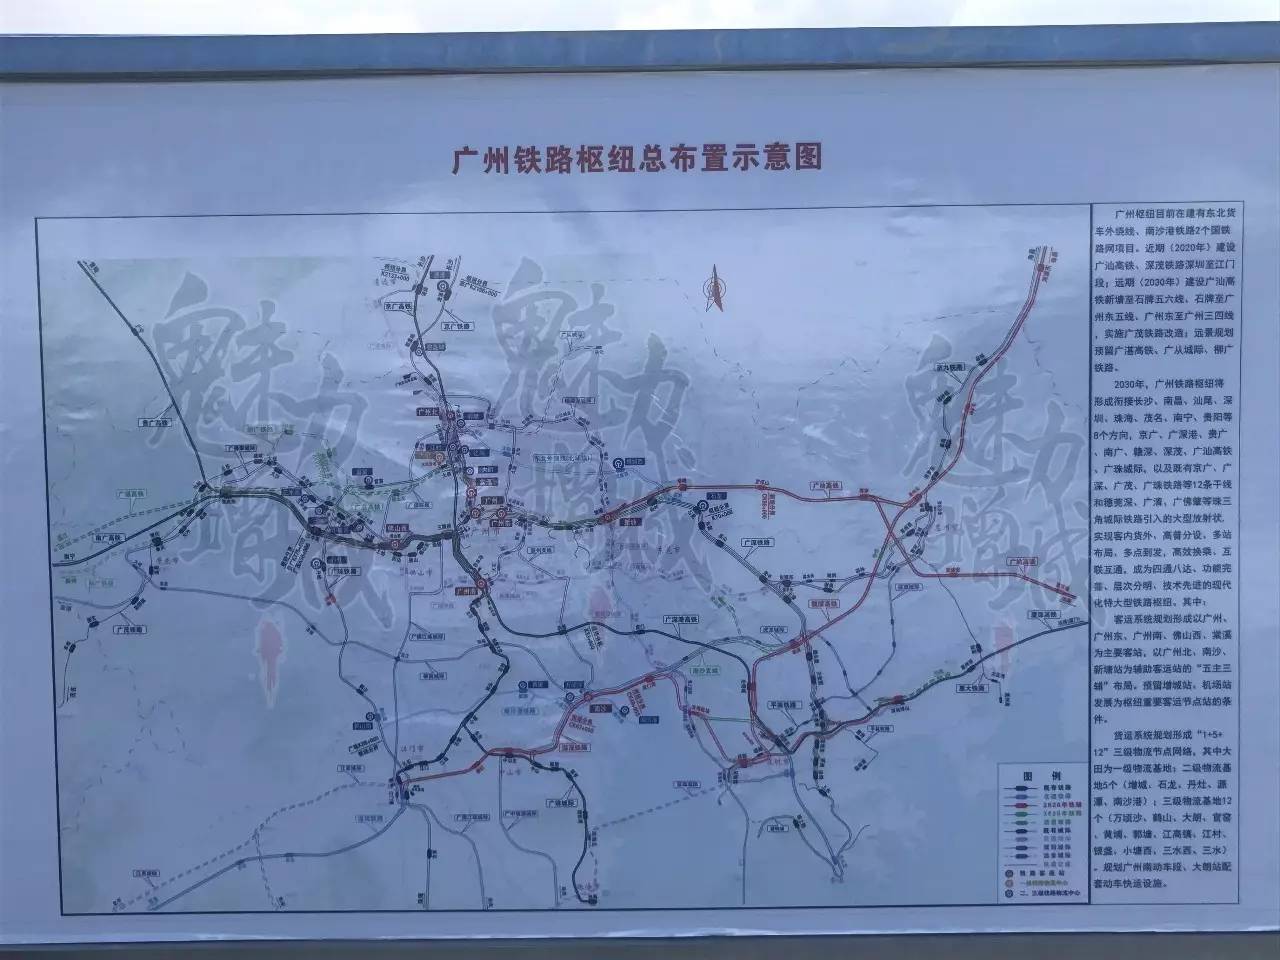 建成后 广州到汕头的时间将缩短至 现场已经架起了高铁建设的工程资料